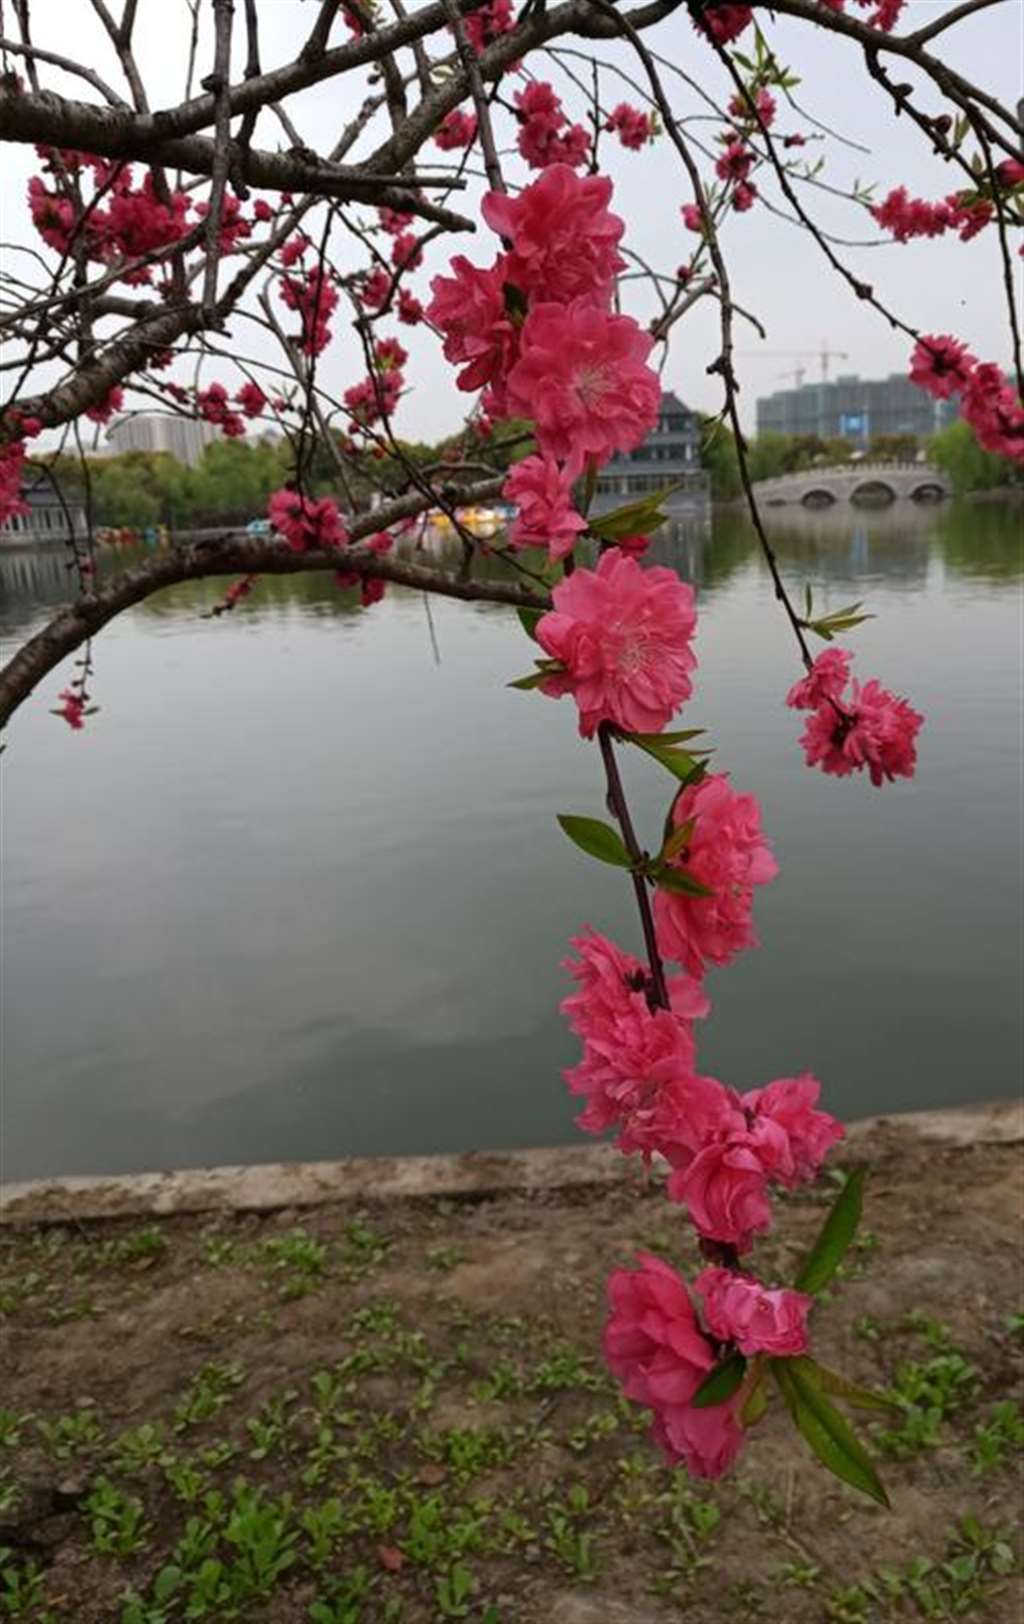 申城已是一座花城,春天的气息,色彩斑斓,大自然的魅力,引无数花粉们竞